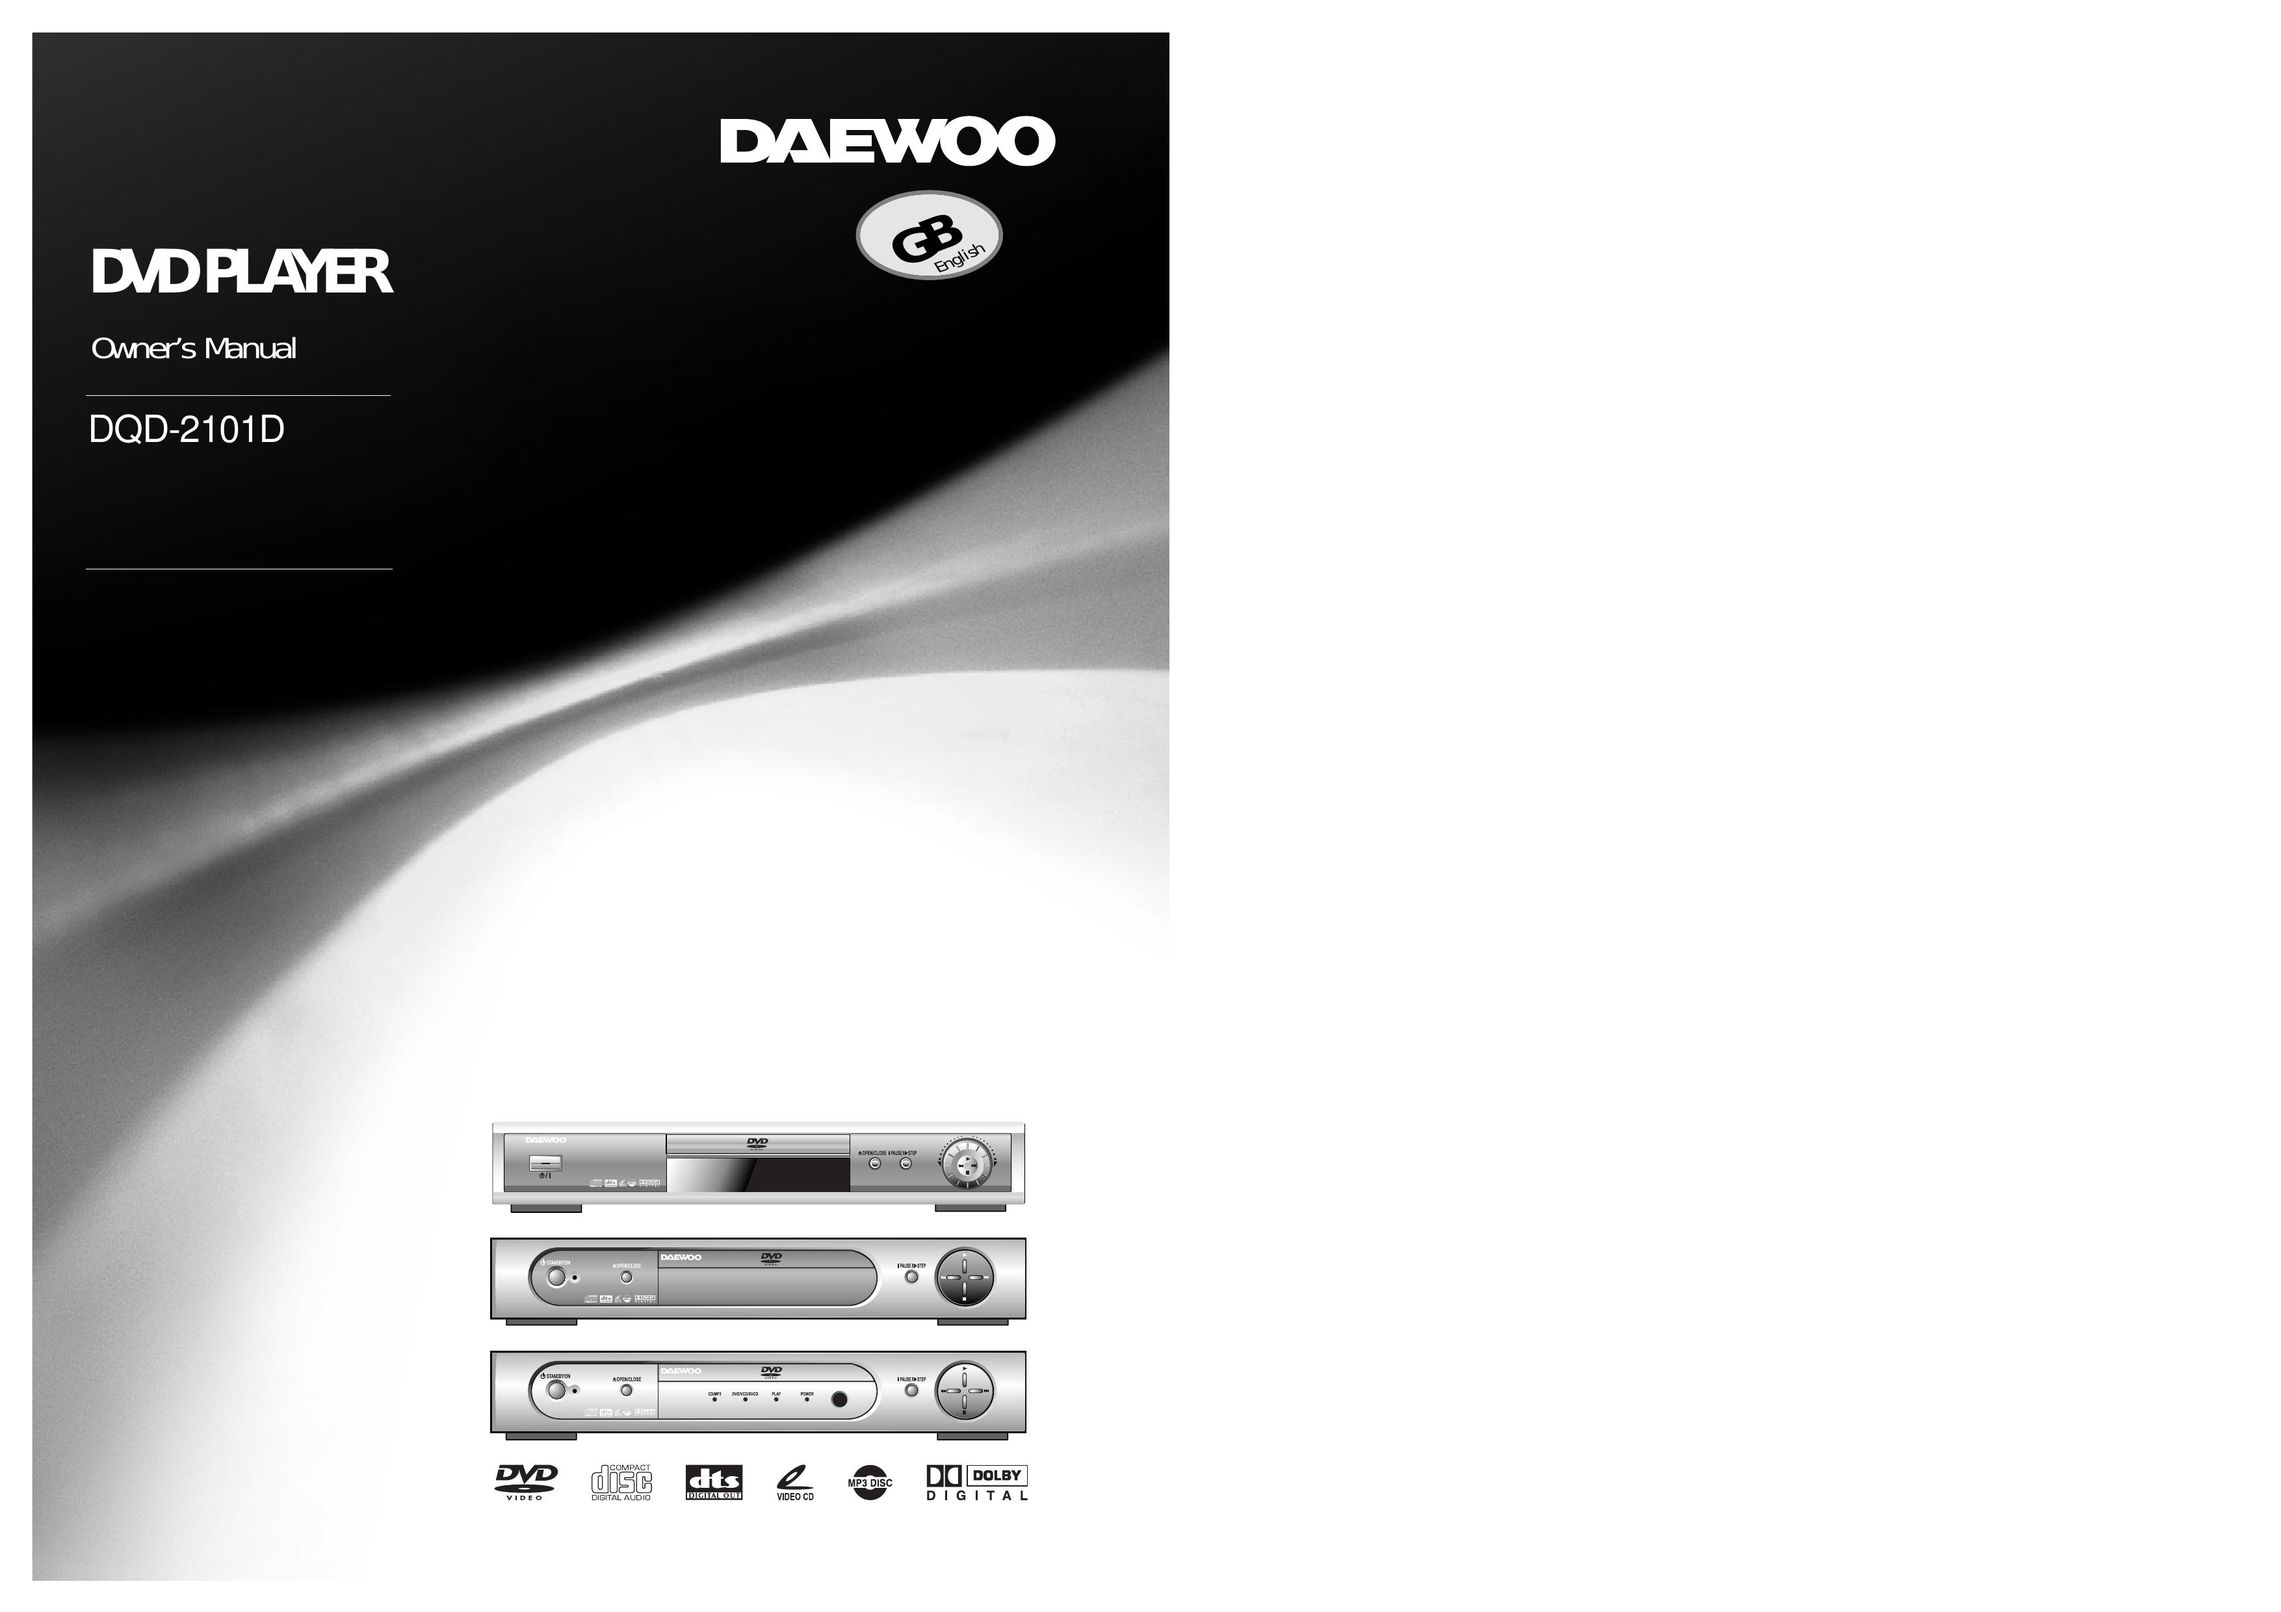 Daewoo DQD-2101D DVD Player User Manual